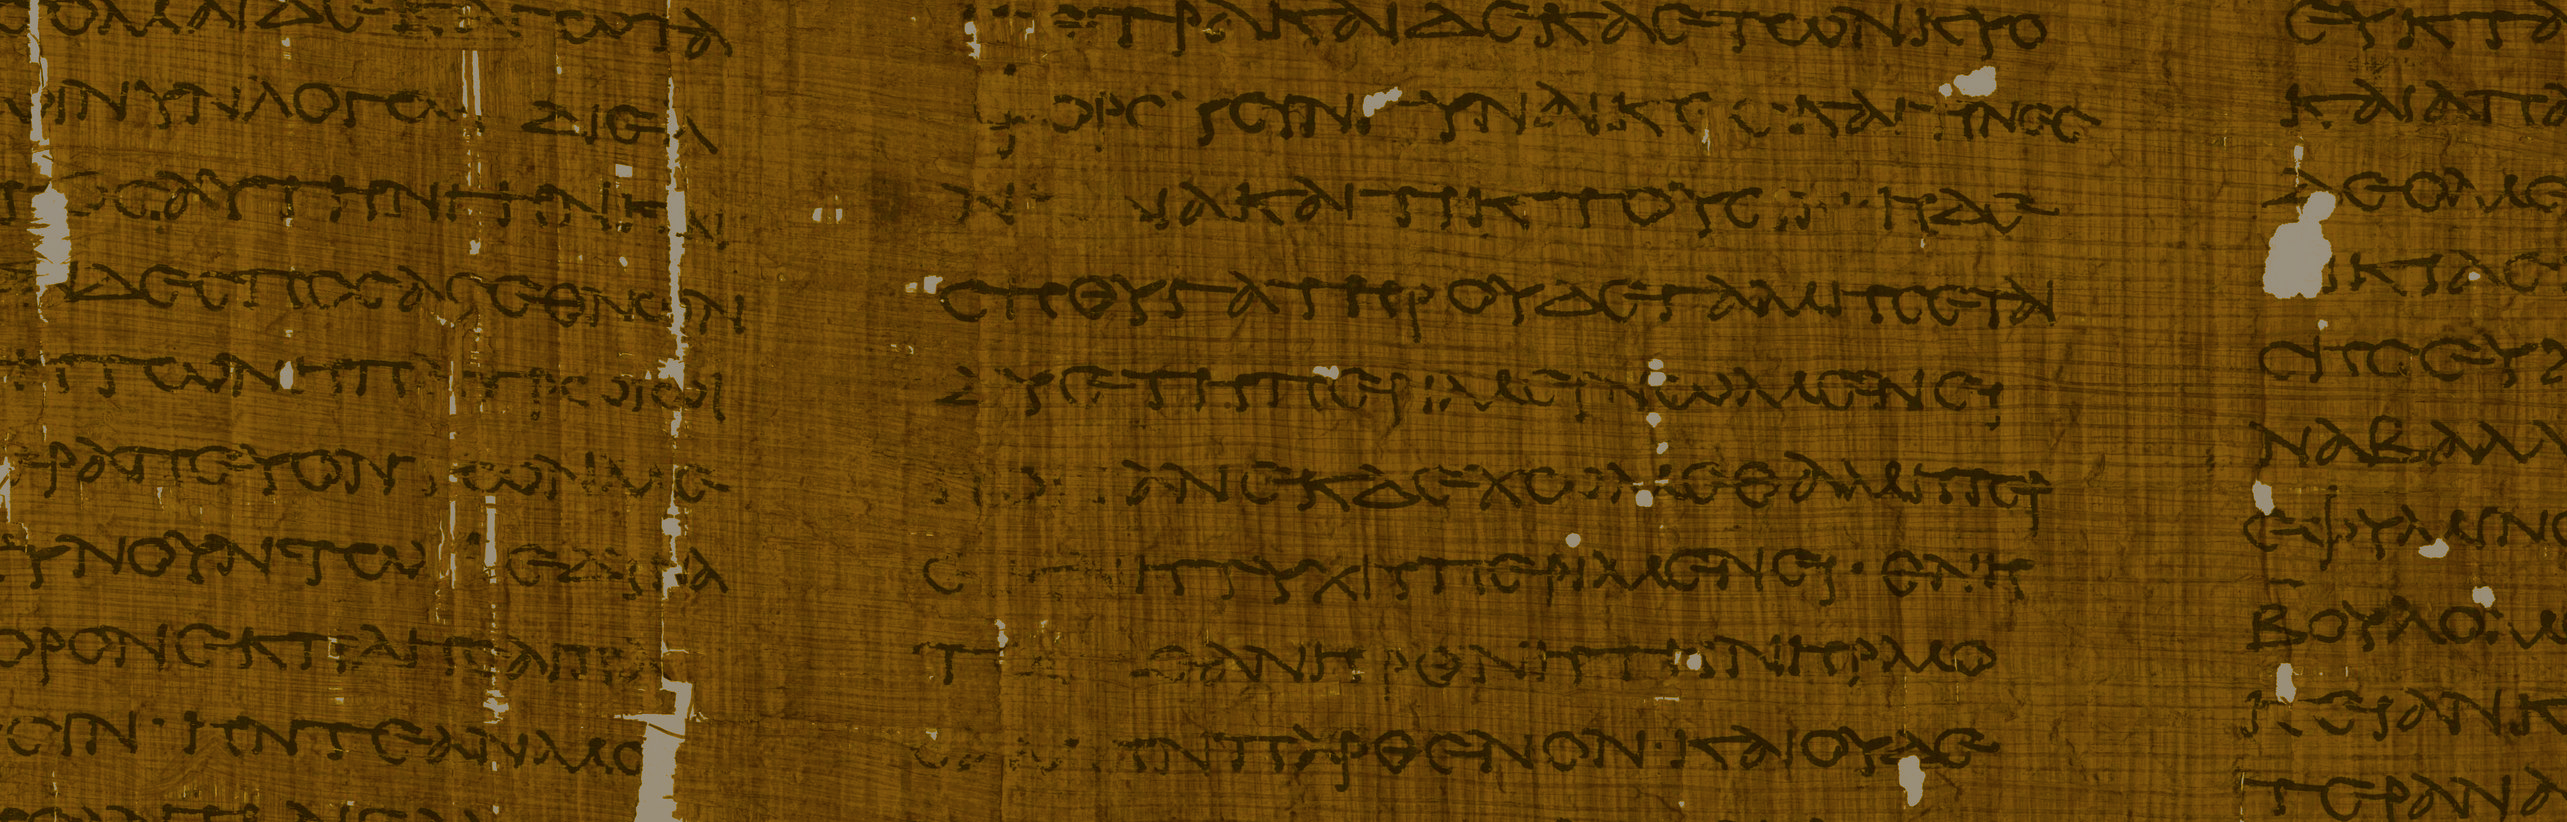 Imagen del papiro que contiene el texto de referencia.